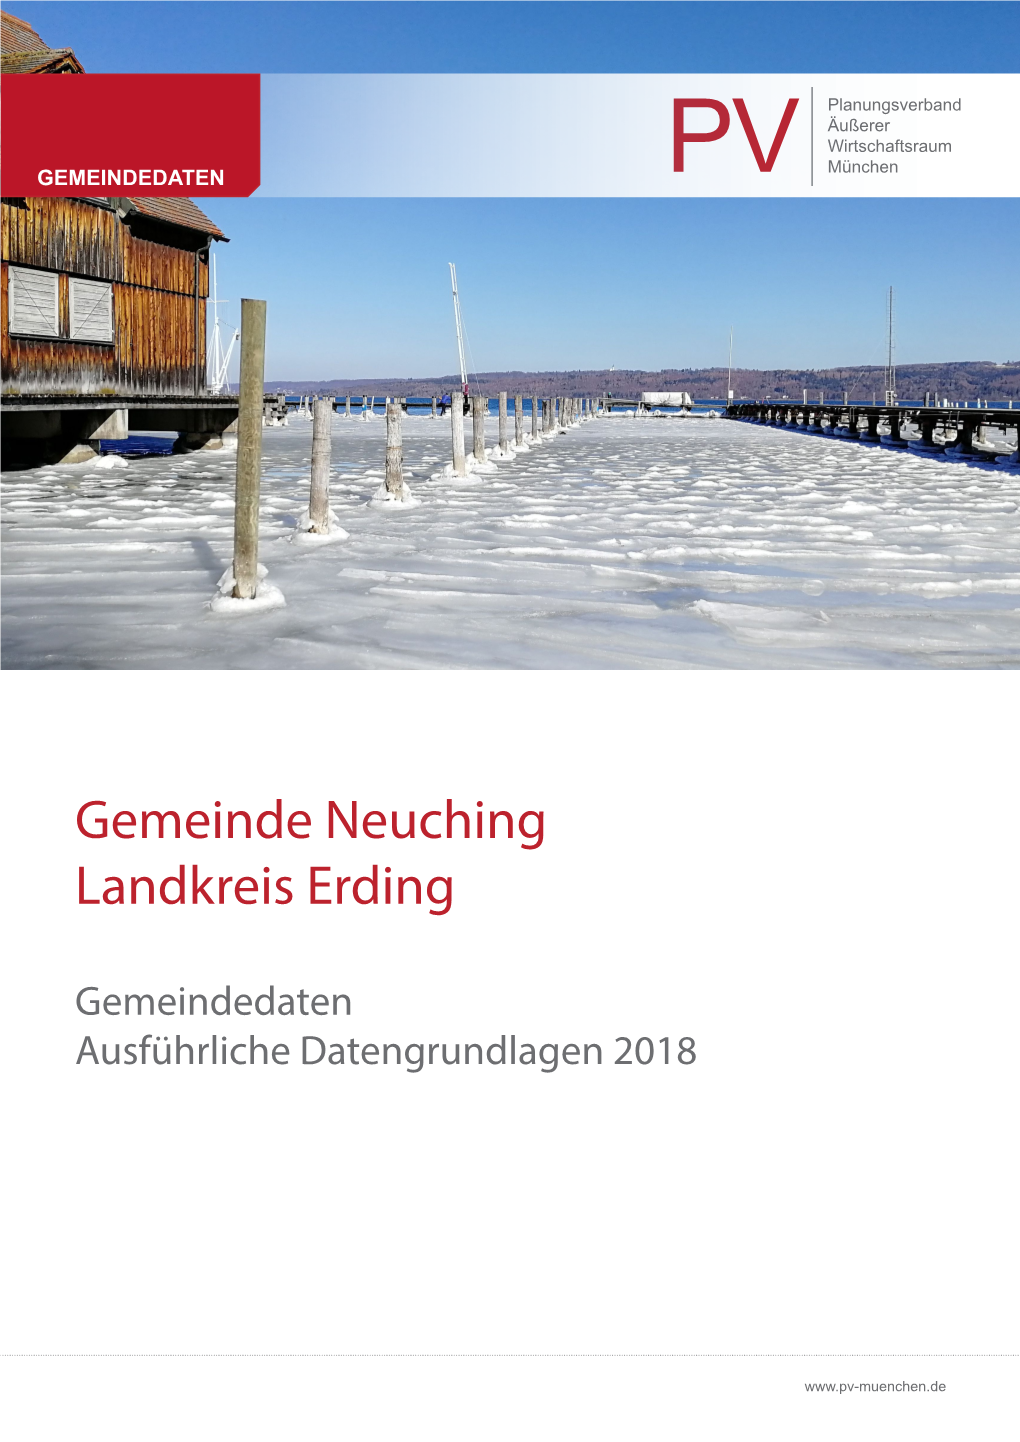 Gemeindedaten Neuching 2018